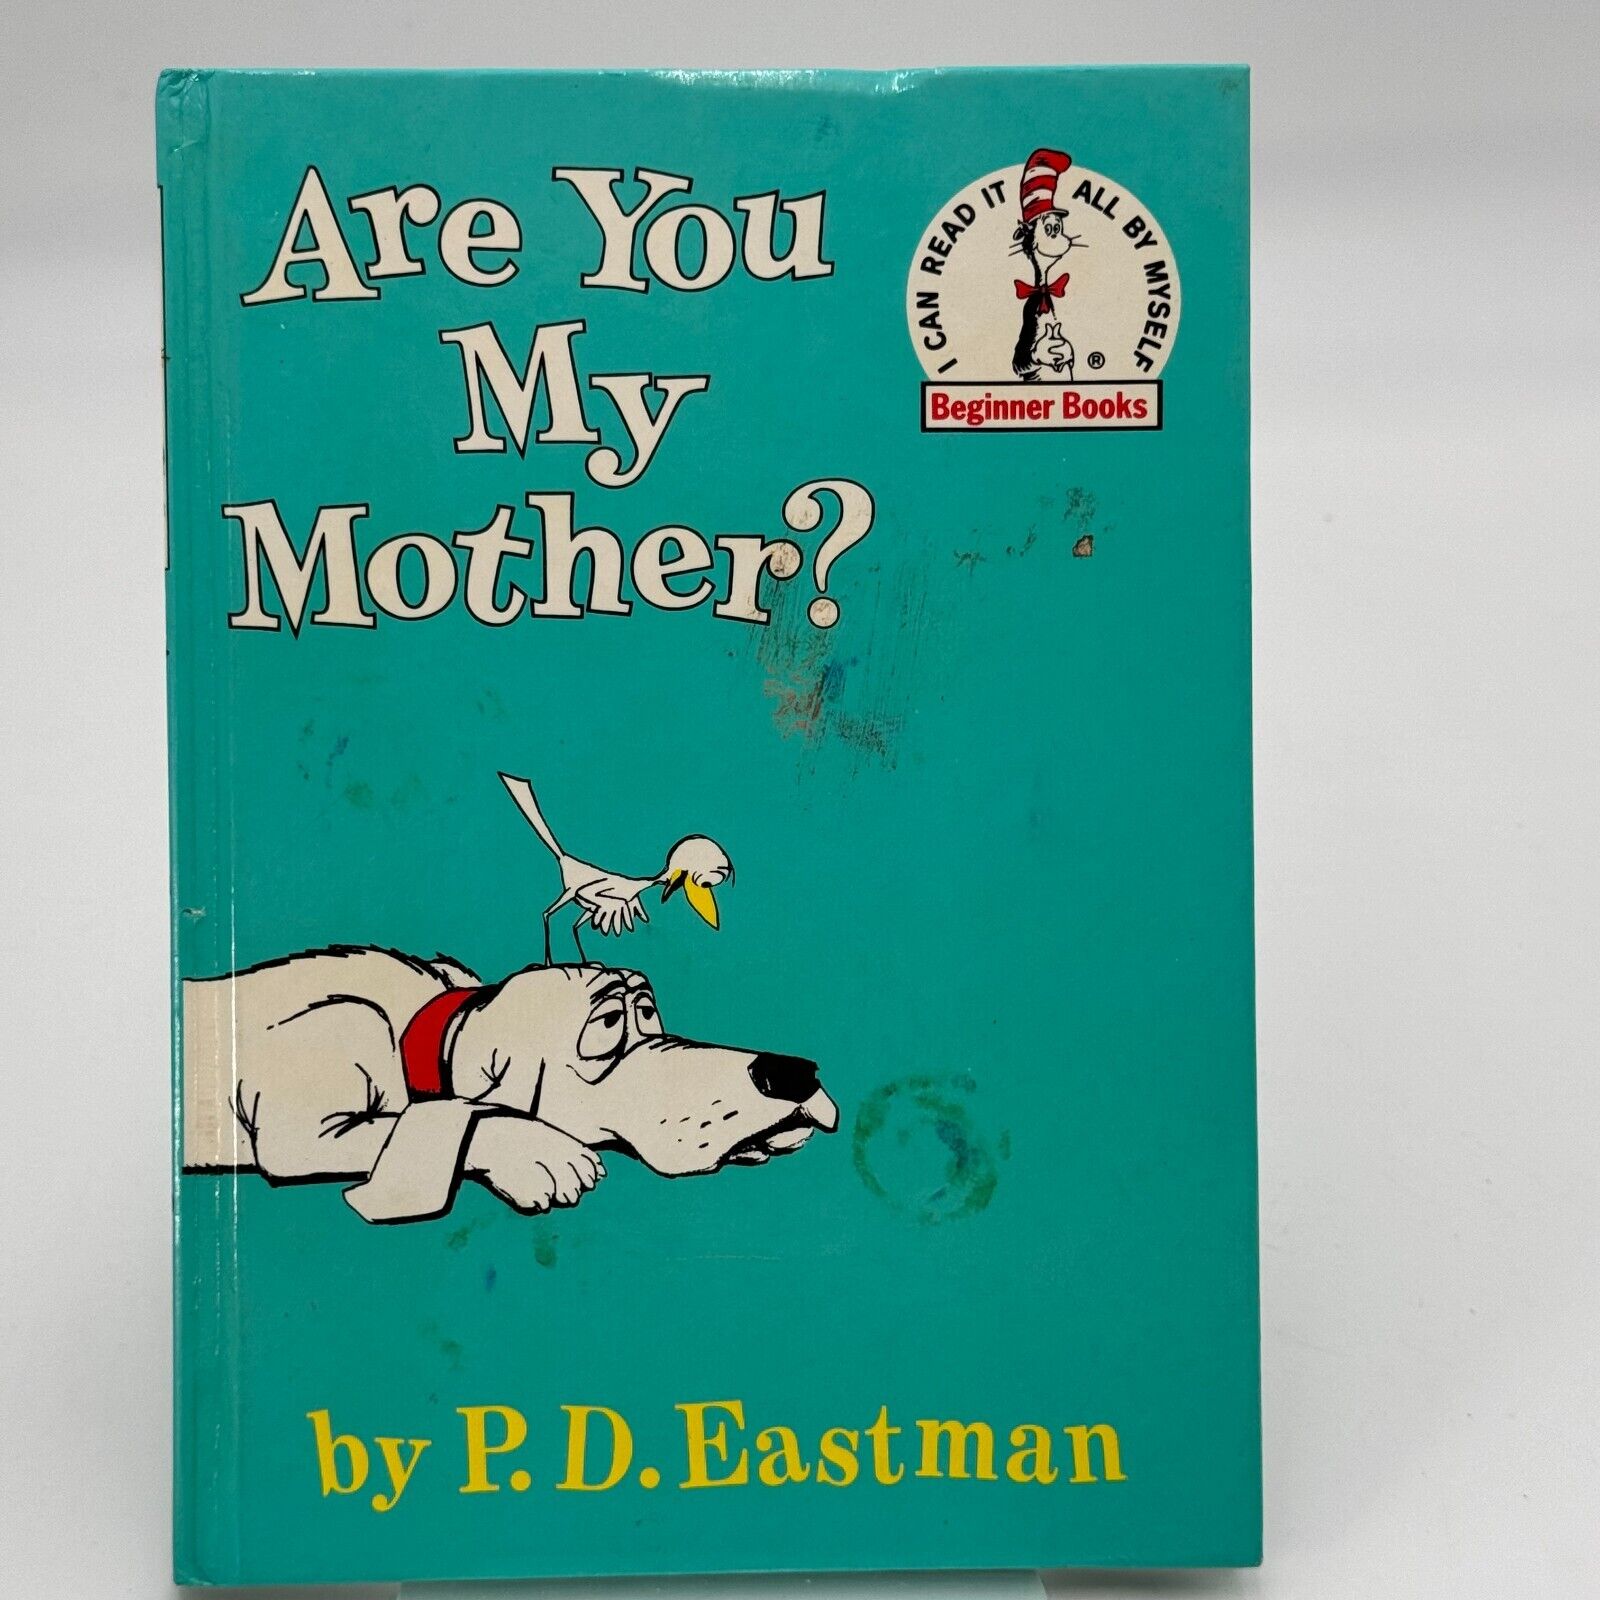 Lot of 12 Bright & Early Beginner’s Books Childrens Stories Seuss Easton LeSieg